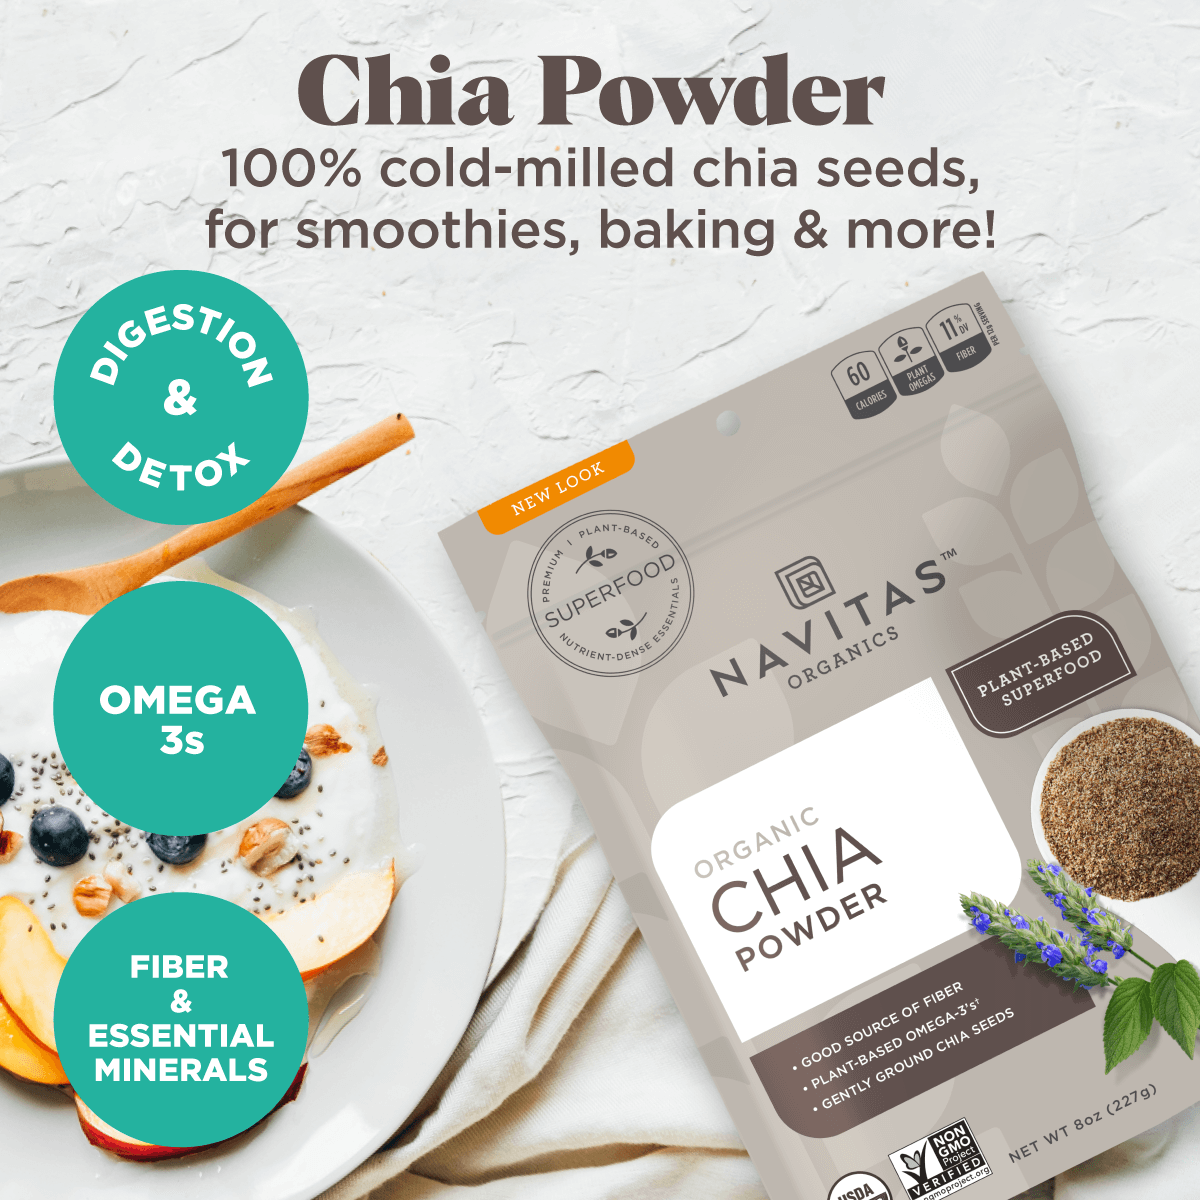 Chia Seed Powder